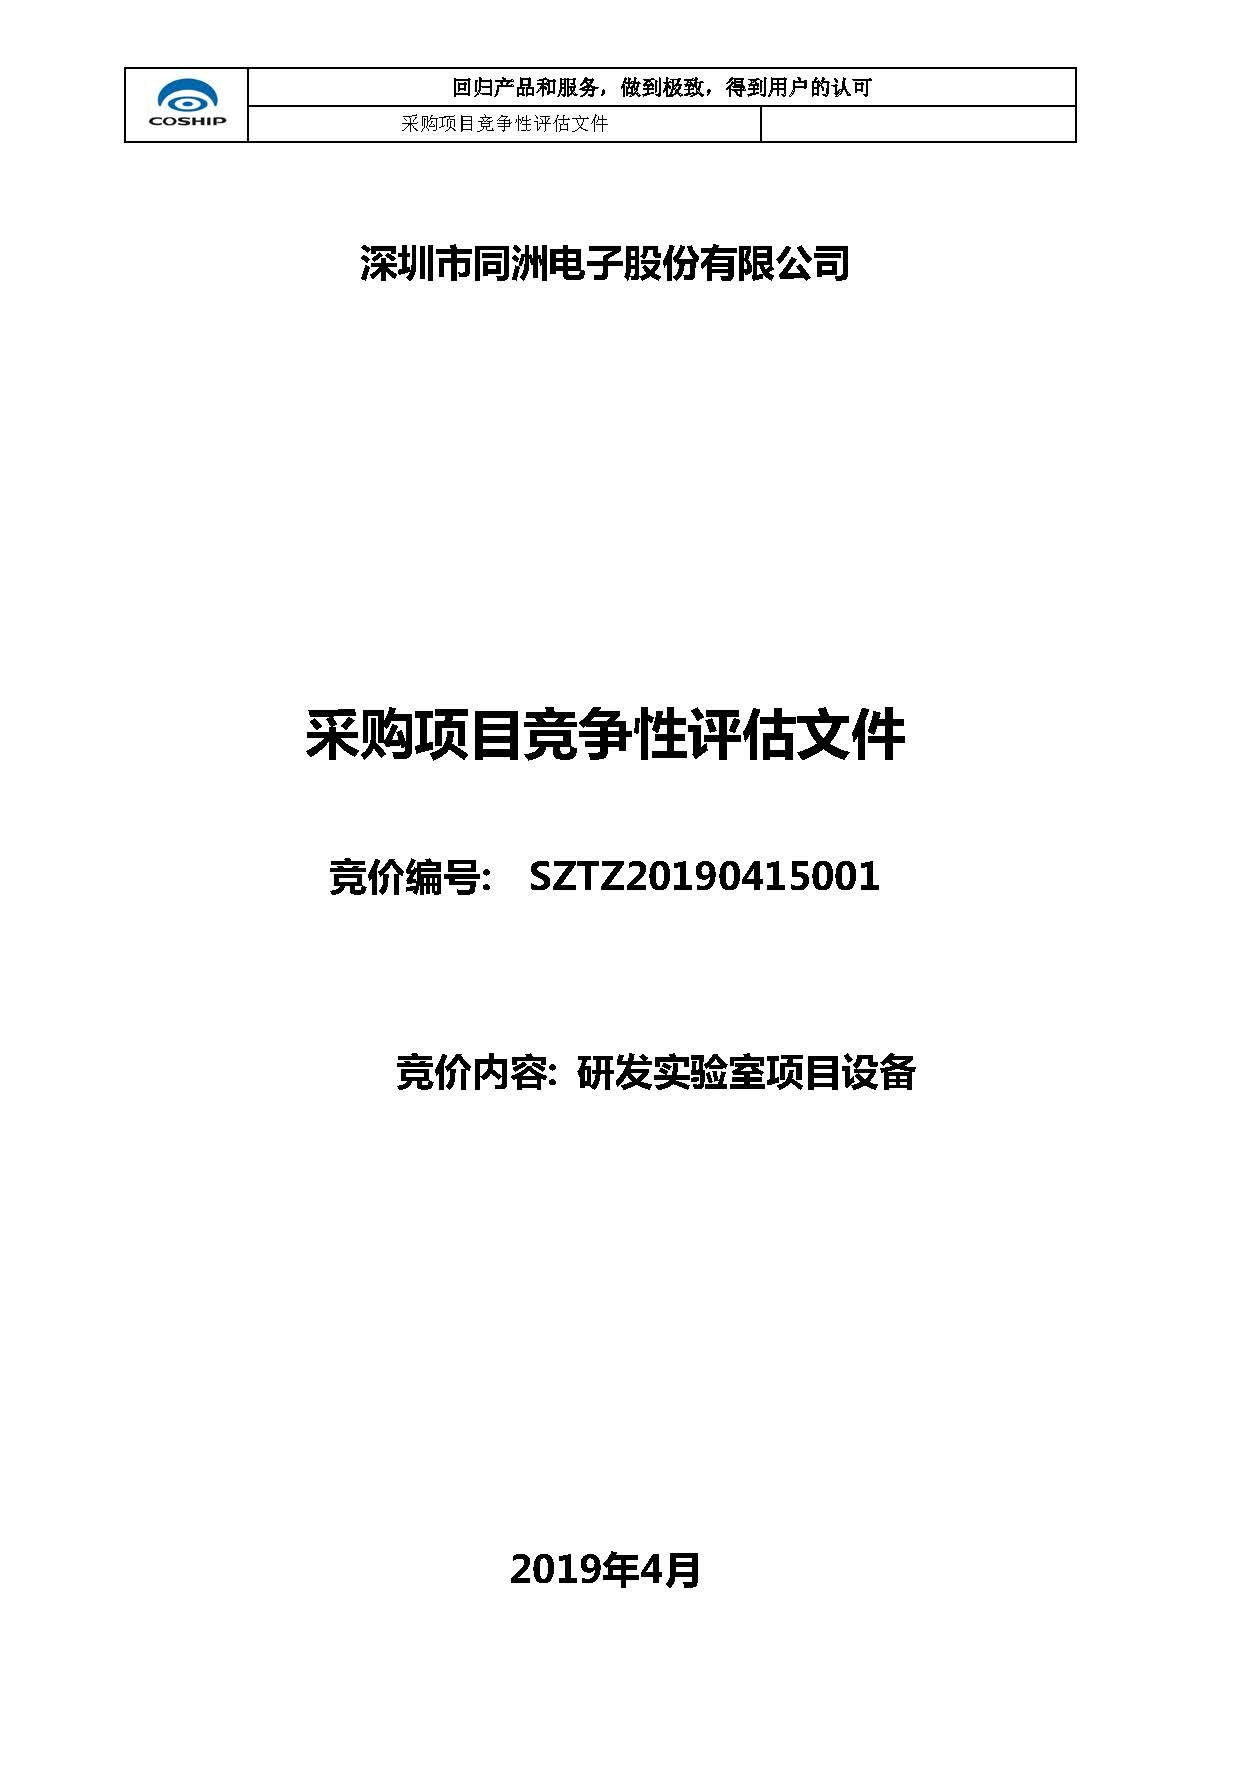 深圳市同洲电子研发实验室项目设备采购招标公告（第一批）